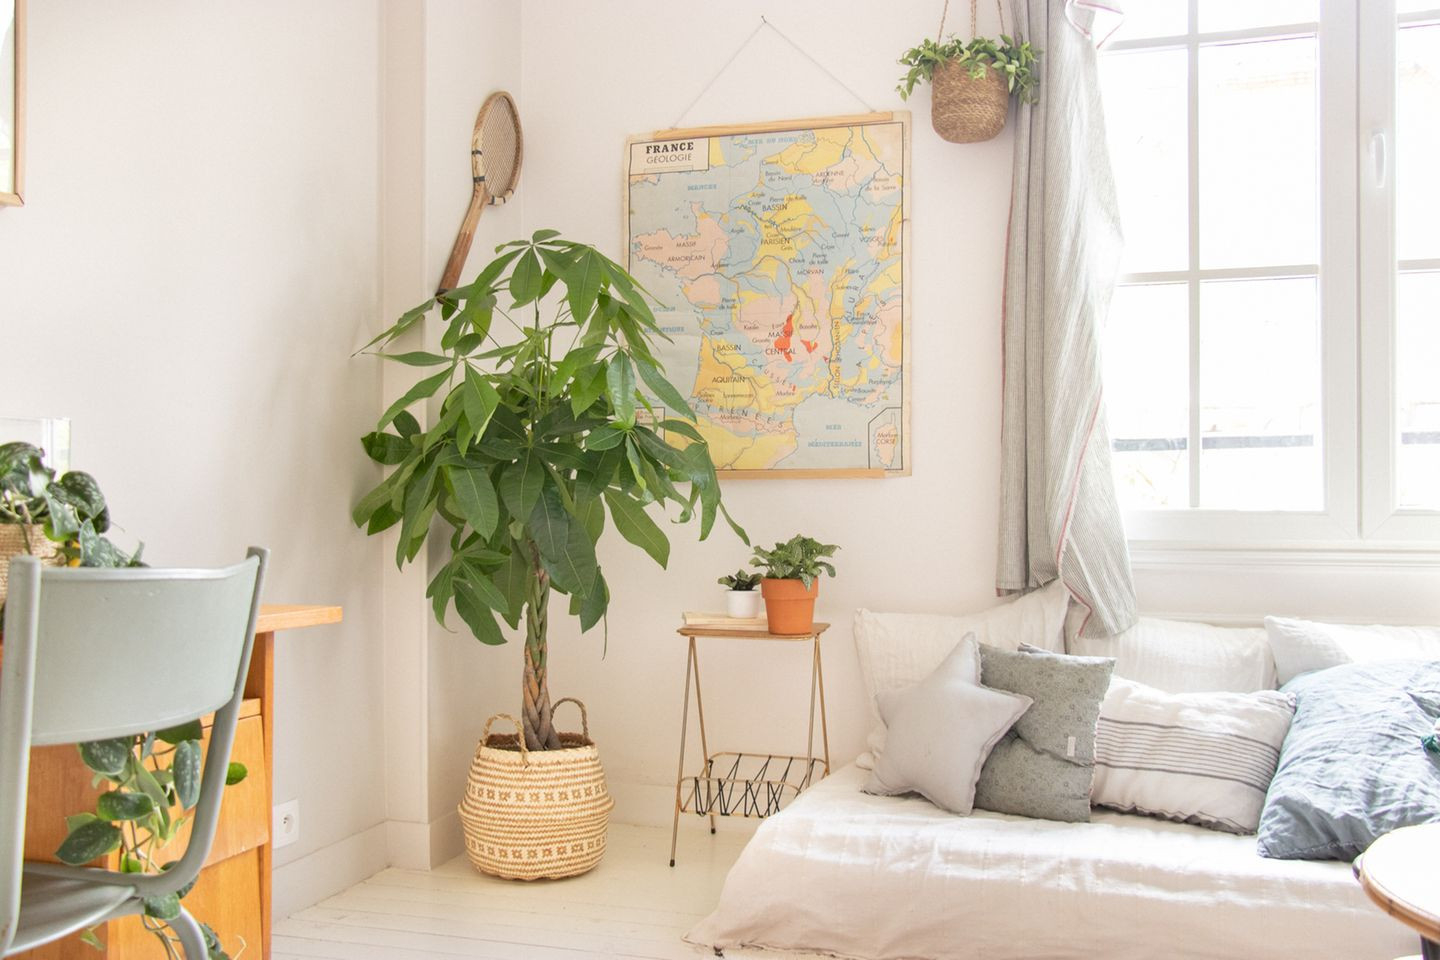 Zimmerbaum: Imposante Zimmerpflanze Mit Charme - [Schöner Wohnen] within Grünpflanzen Wohnzimmer